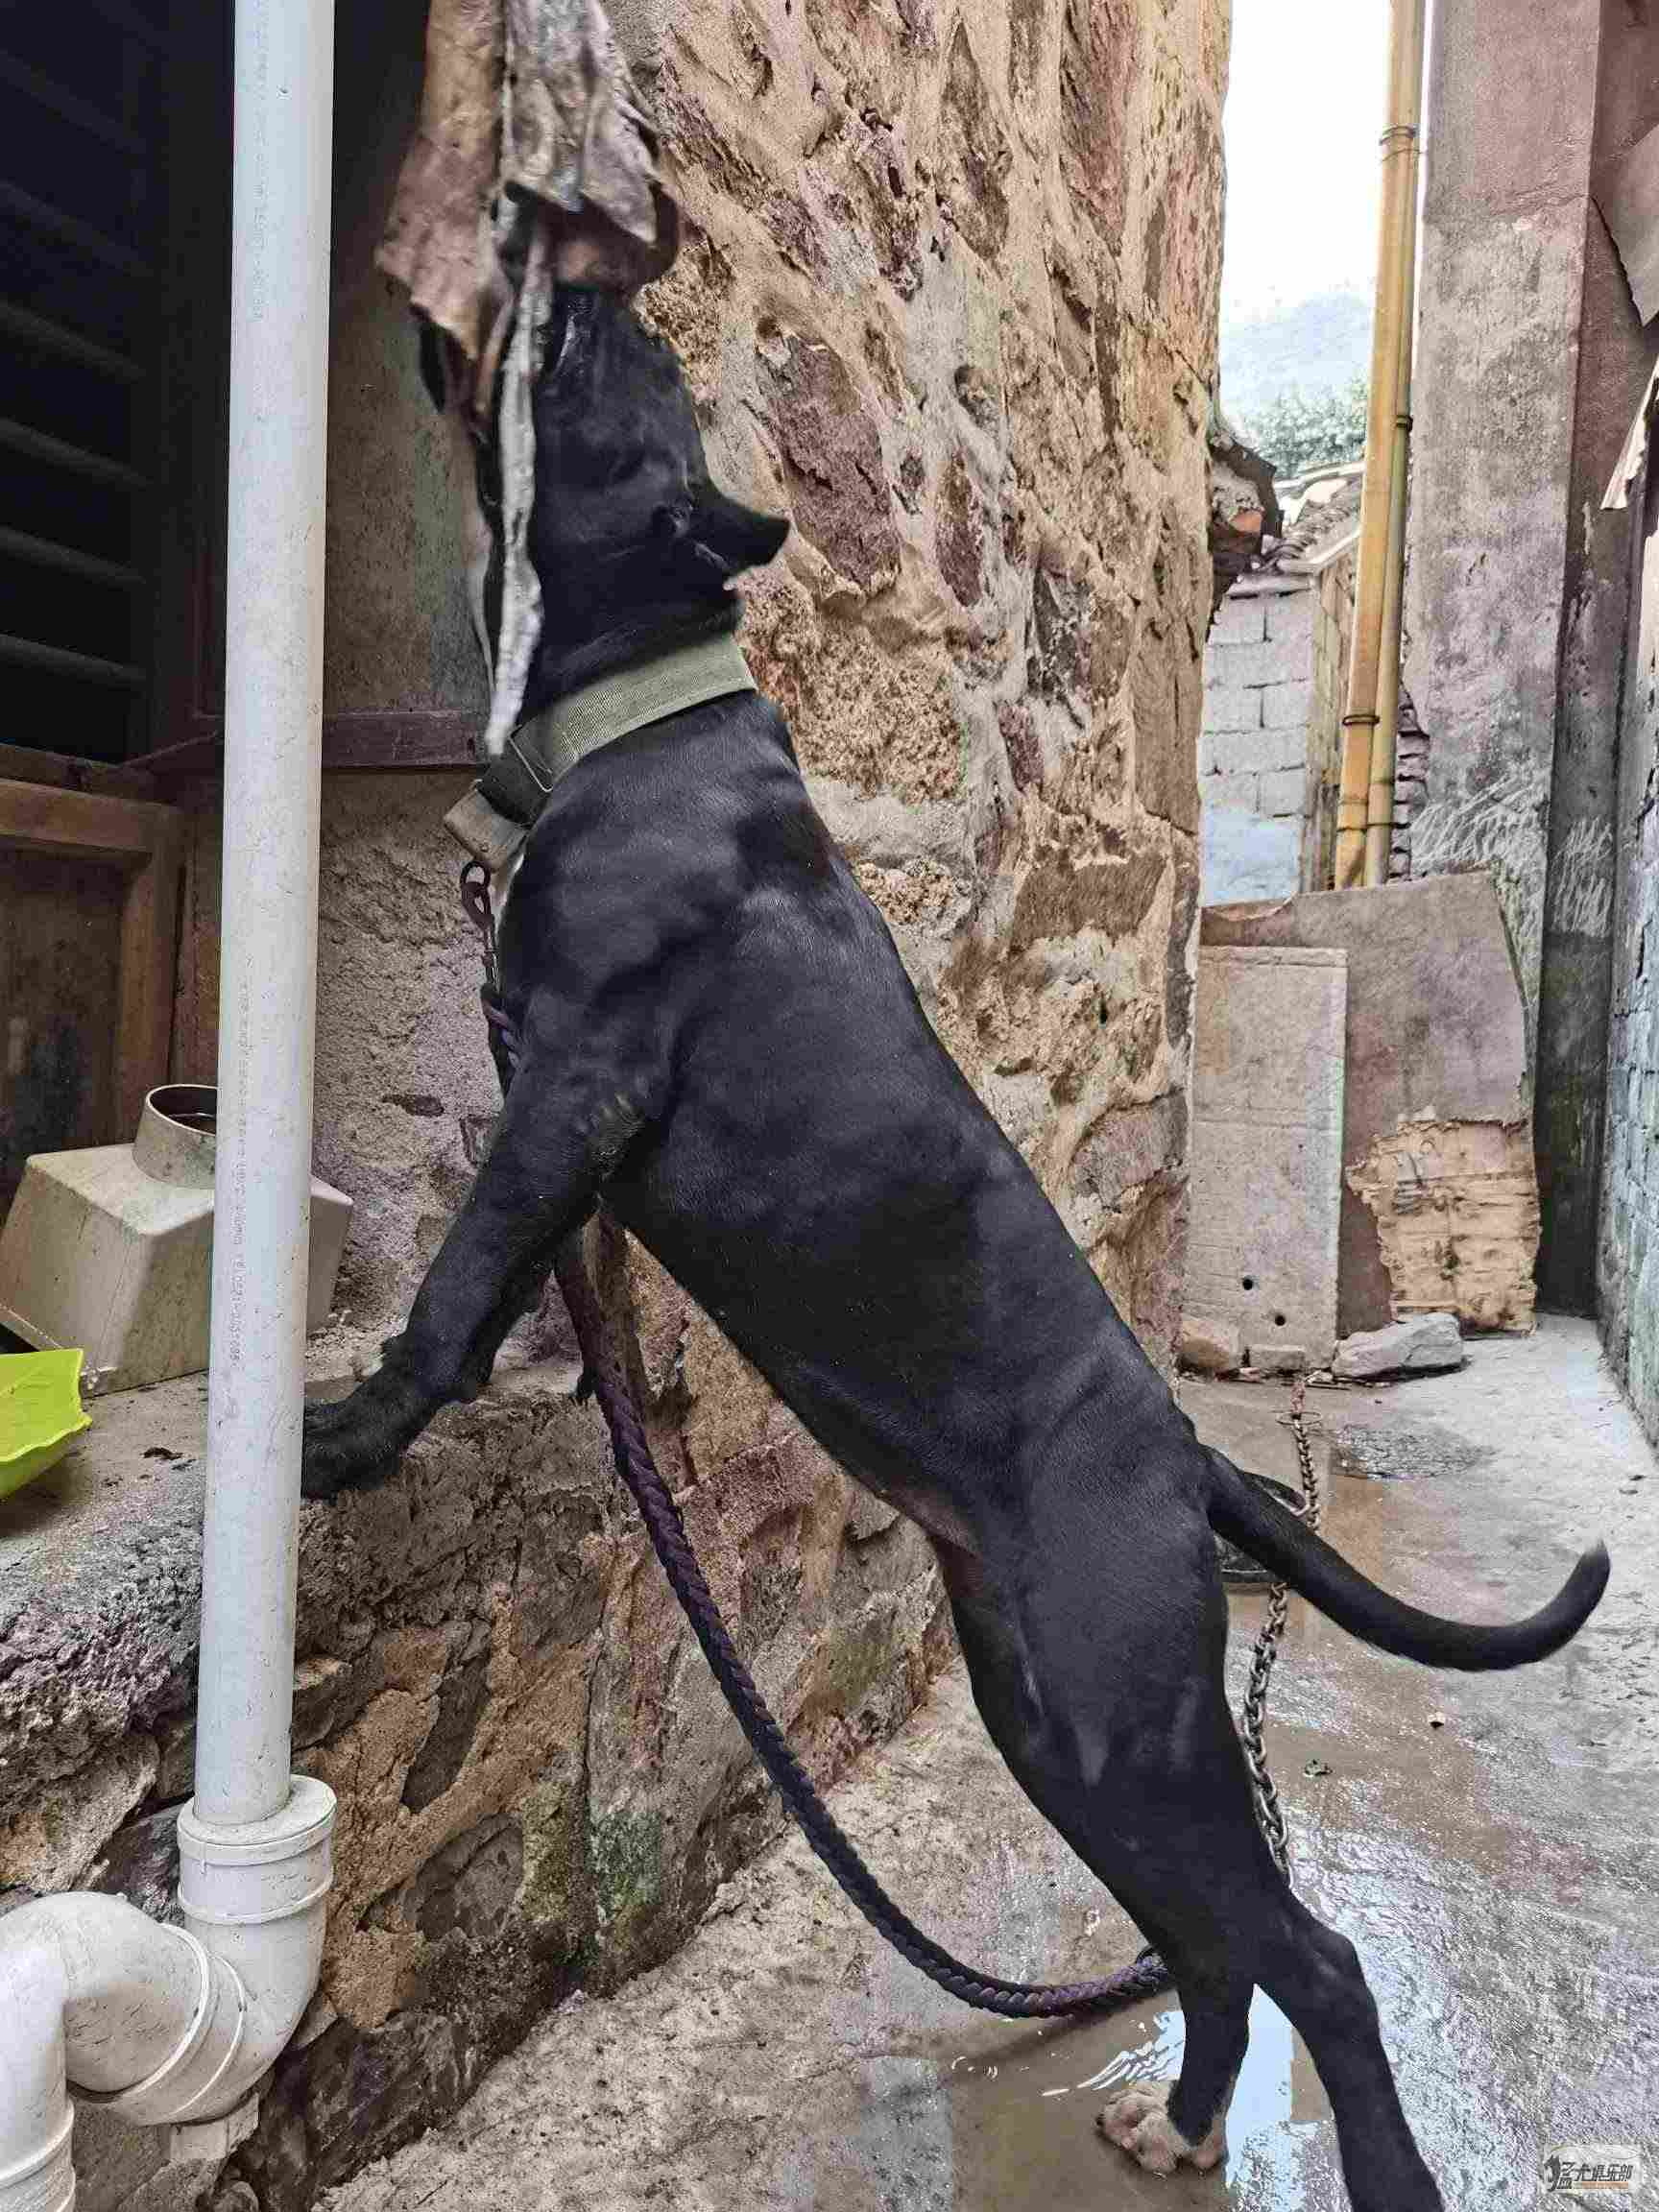 普雷萨加纳利，找老公 - 加纳利 - 猛犬俱乐部-中国具有影响力的猛犬网站 - Powered by Discuz!